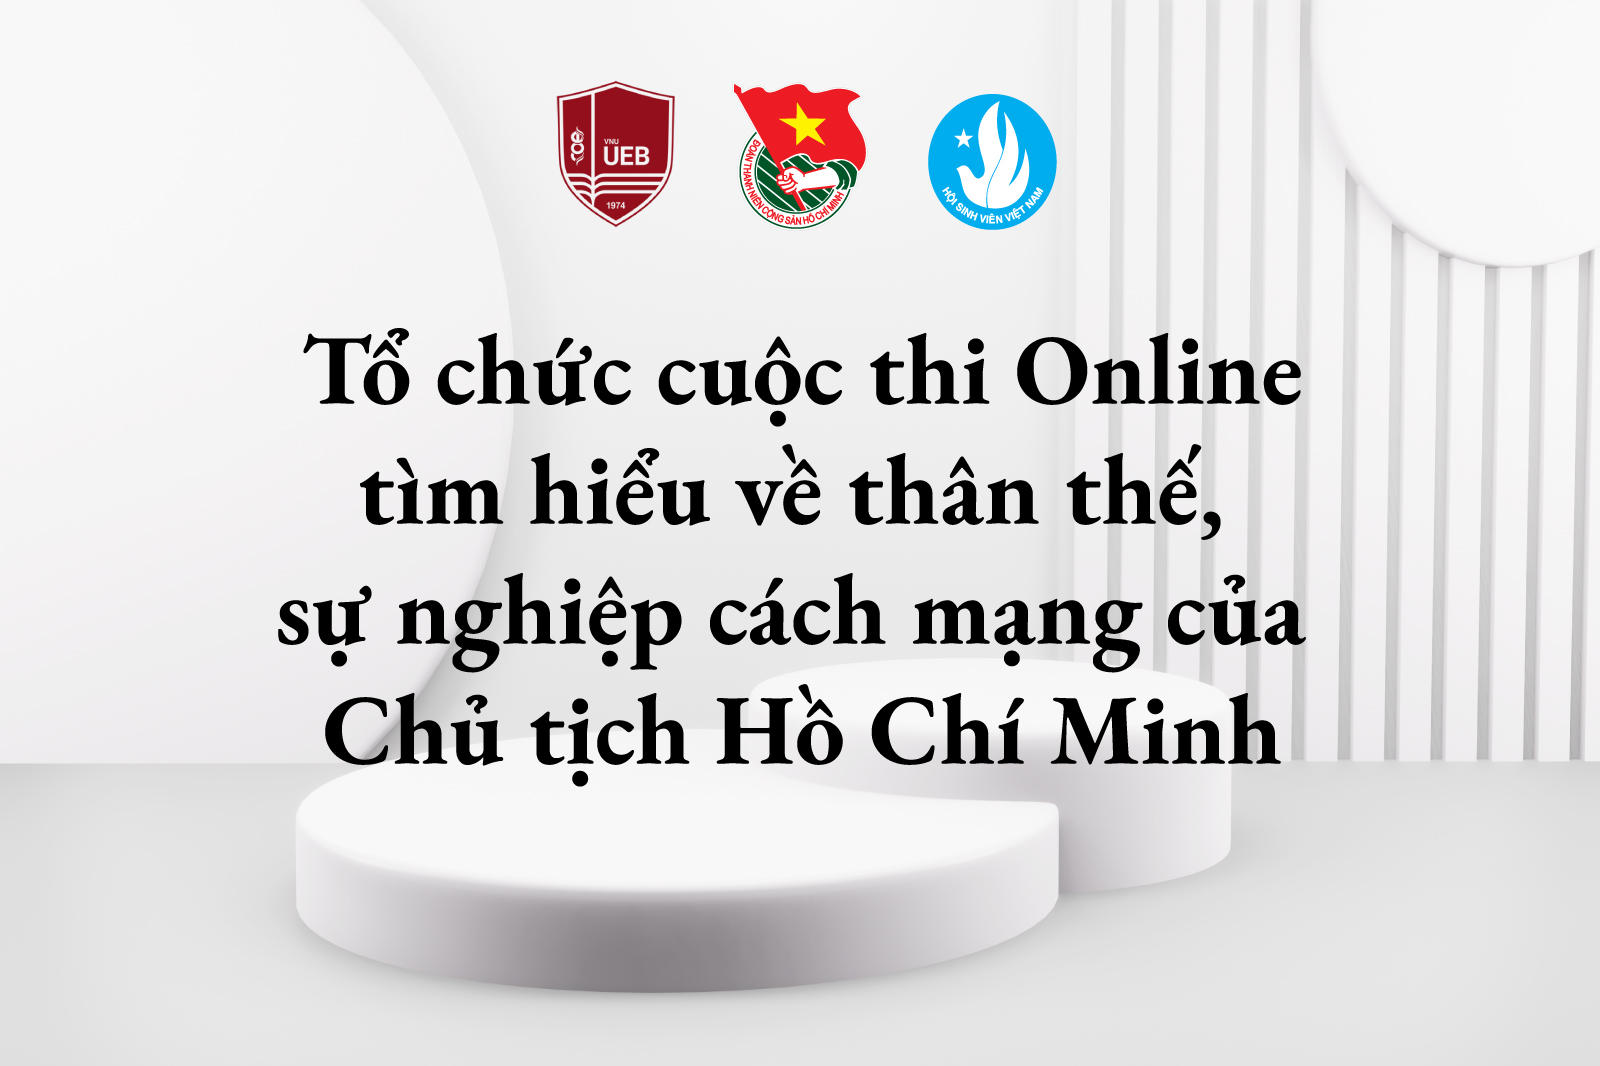 Tổ chức cuộc thi Online tìm hiểu về thân thế, sự nghiệp cách mạng của Chủ tịch Hồ Chí Minh